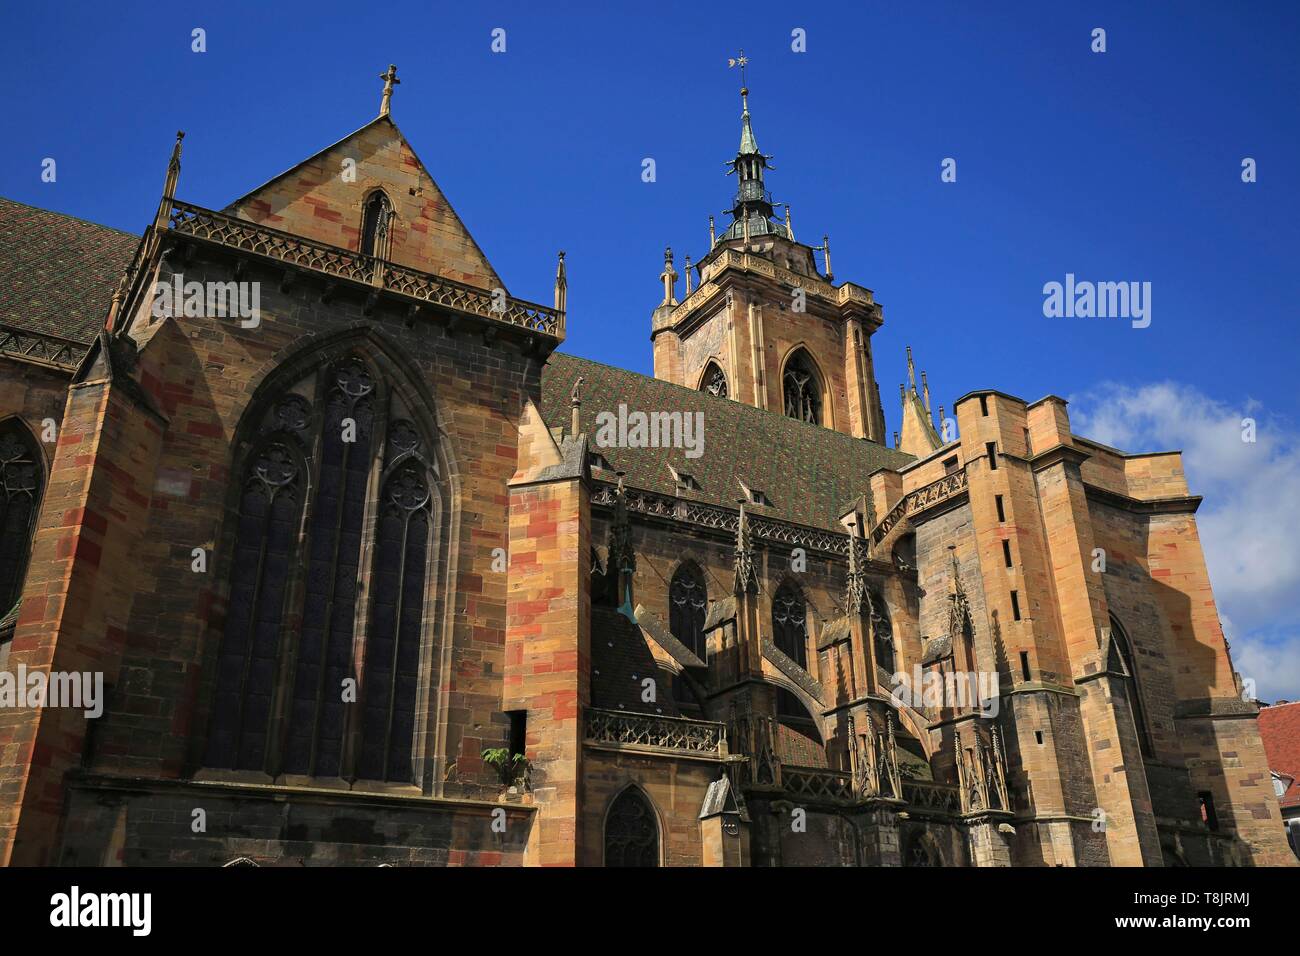 Francia, Haut Rhin, Colmar, la collegiata di San Martino, spesso chiamato Saint Martin de Colmar cattedrale, è il più importante edificio religioso della città di Colmar, in Alsazia, e una delle più grandi chiese gotiche in Haut Rhin Foto Stock